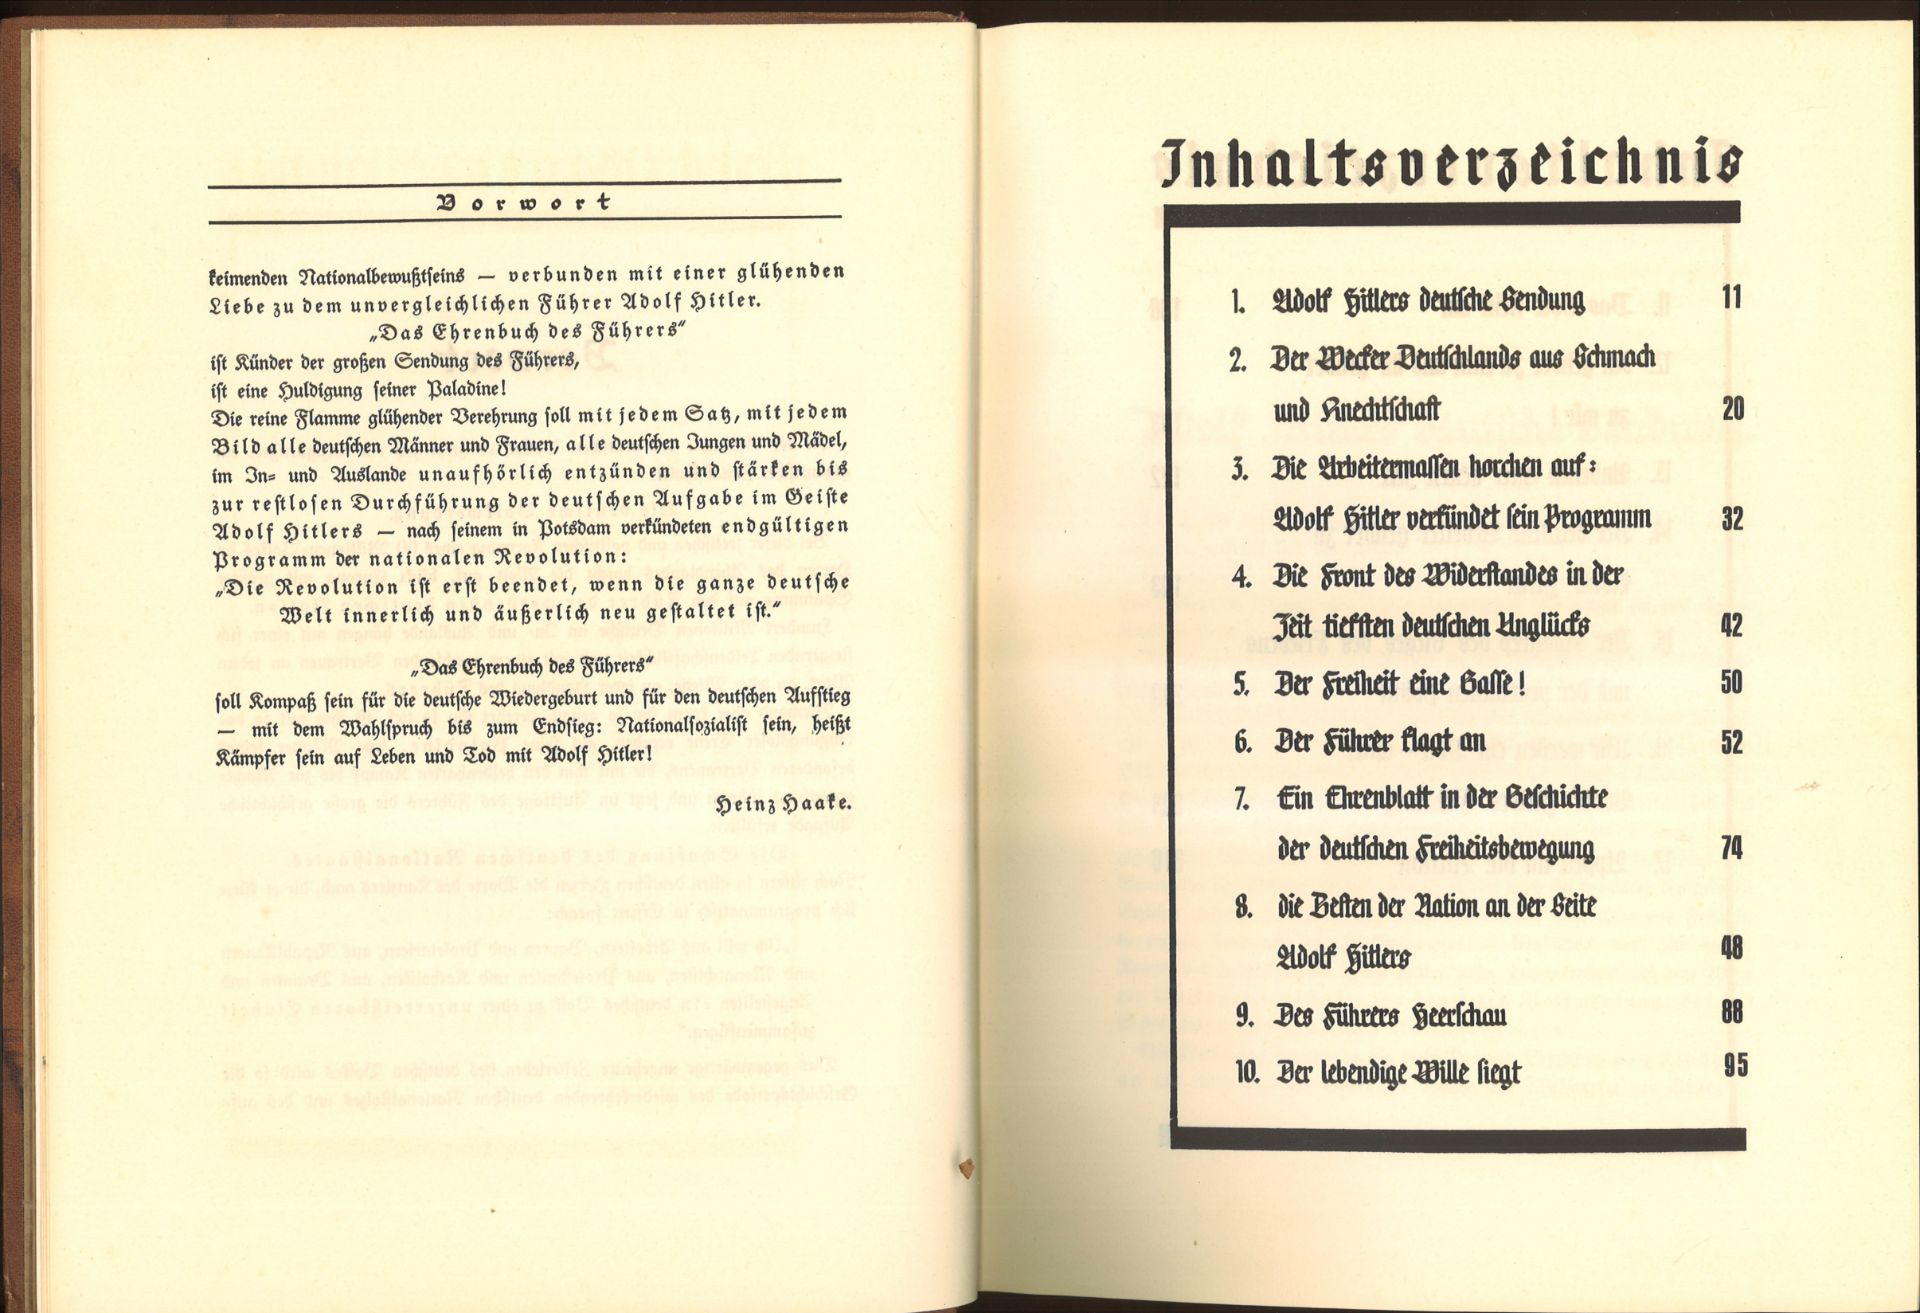 Das Ehrenbuch des Führers. Der Weg zur Volksgemeinschaft, Haake, Heinz (Hg.) Verlag: Floeder, - Image 4 of 4